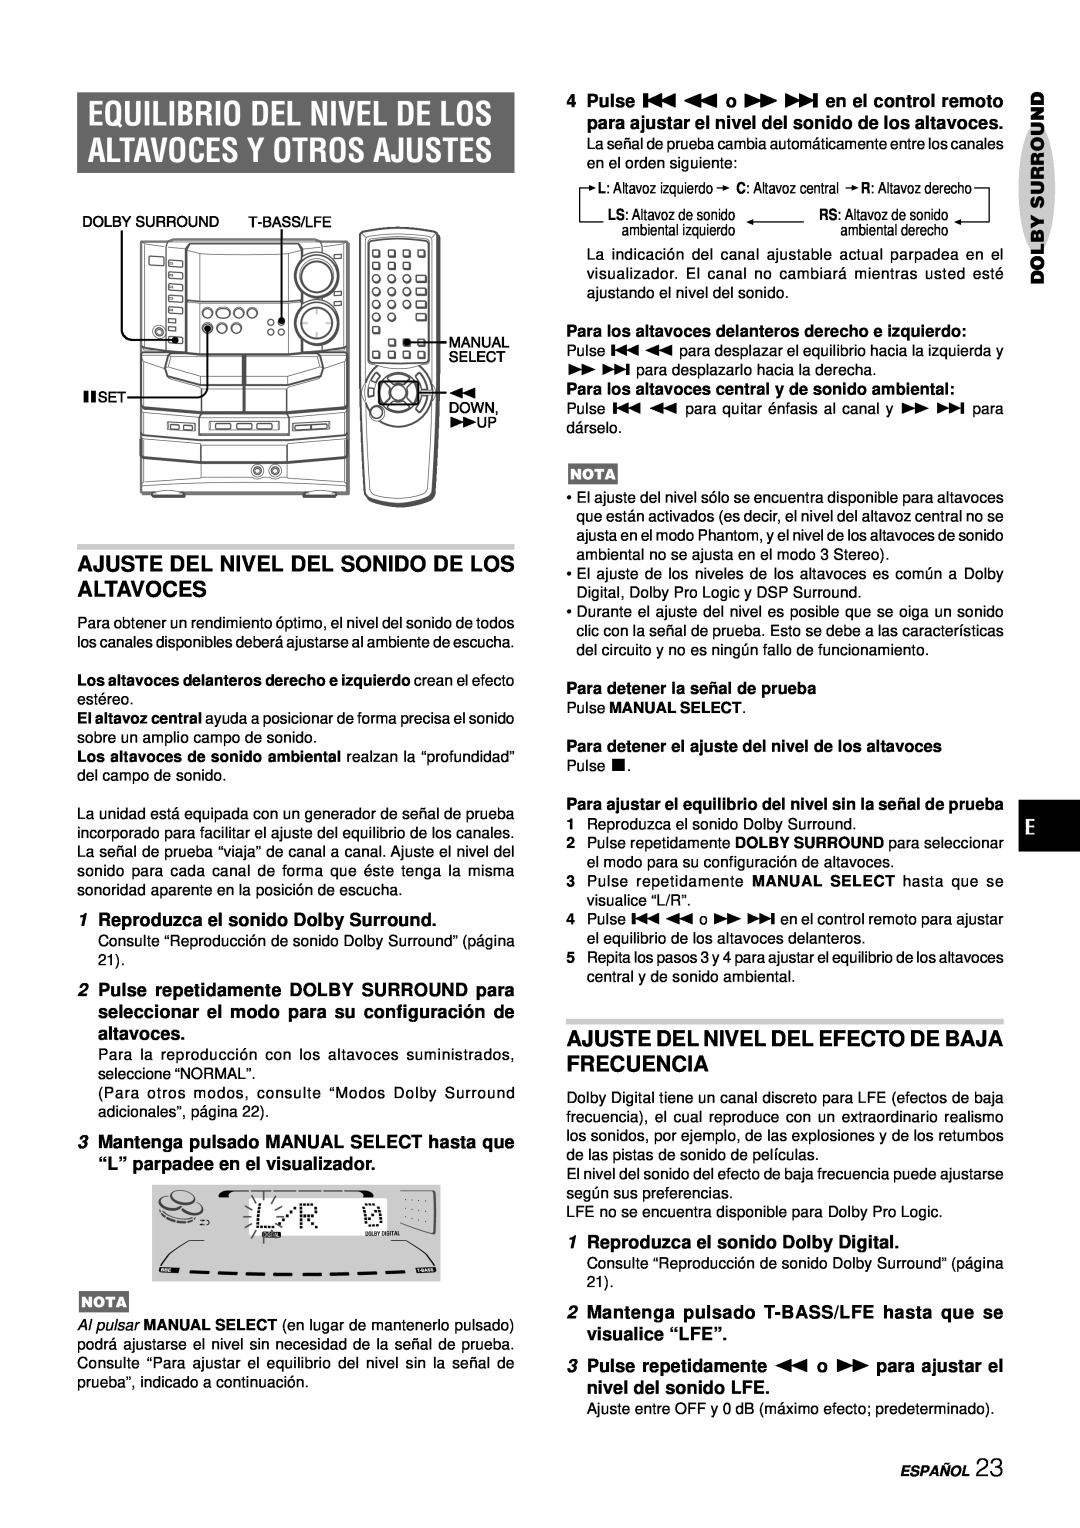 Aiwa NSX-DS8 manual Equilibrio Del Nivel De Los, Altavoces Y Otros Ajustes, Ajuste Del Nivel Del Sonido De Los Altavoces 